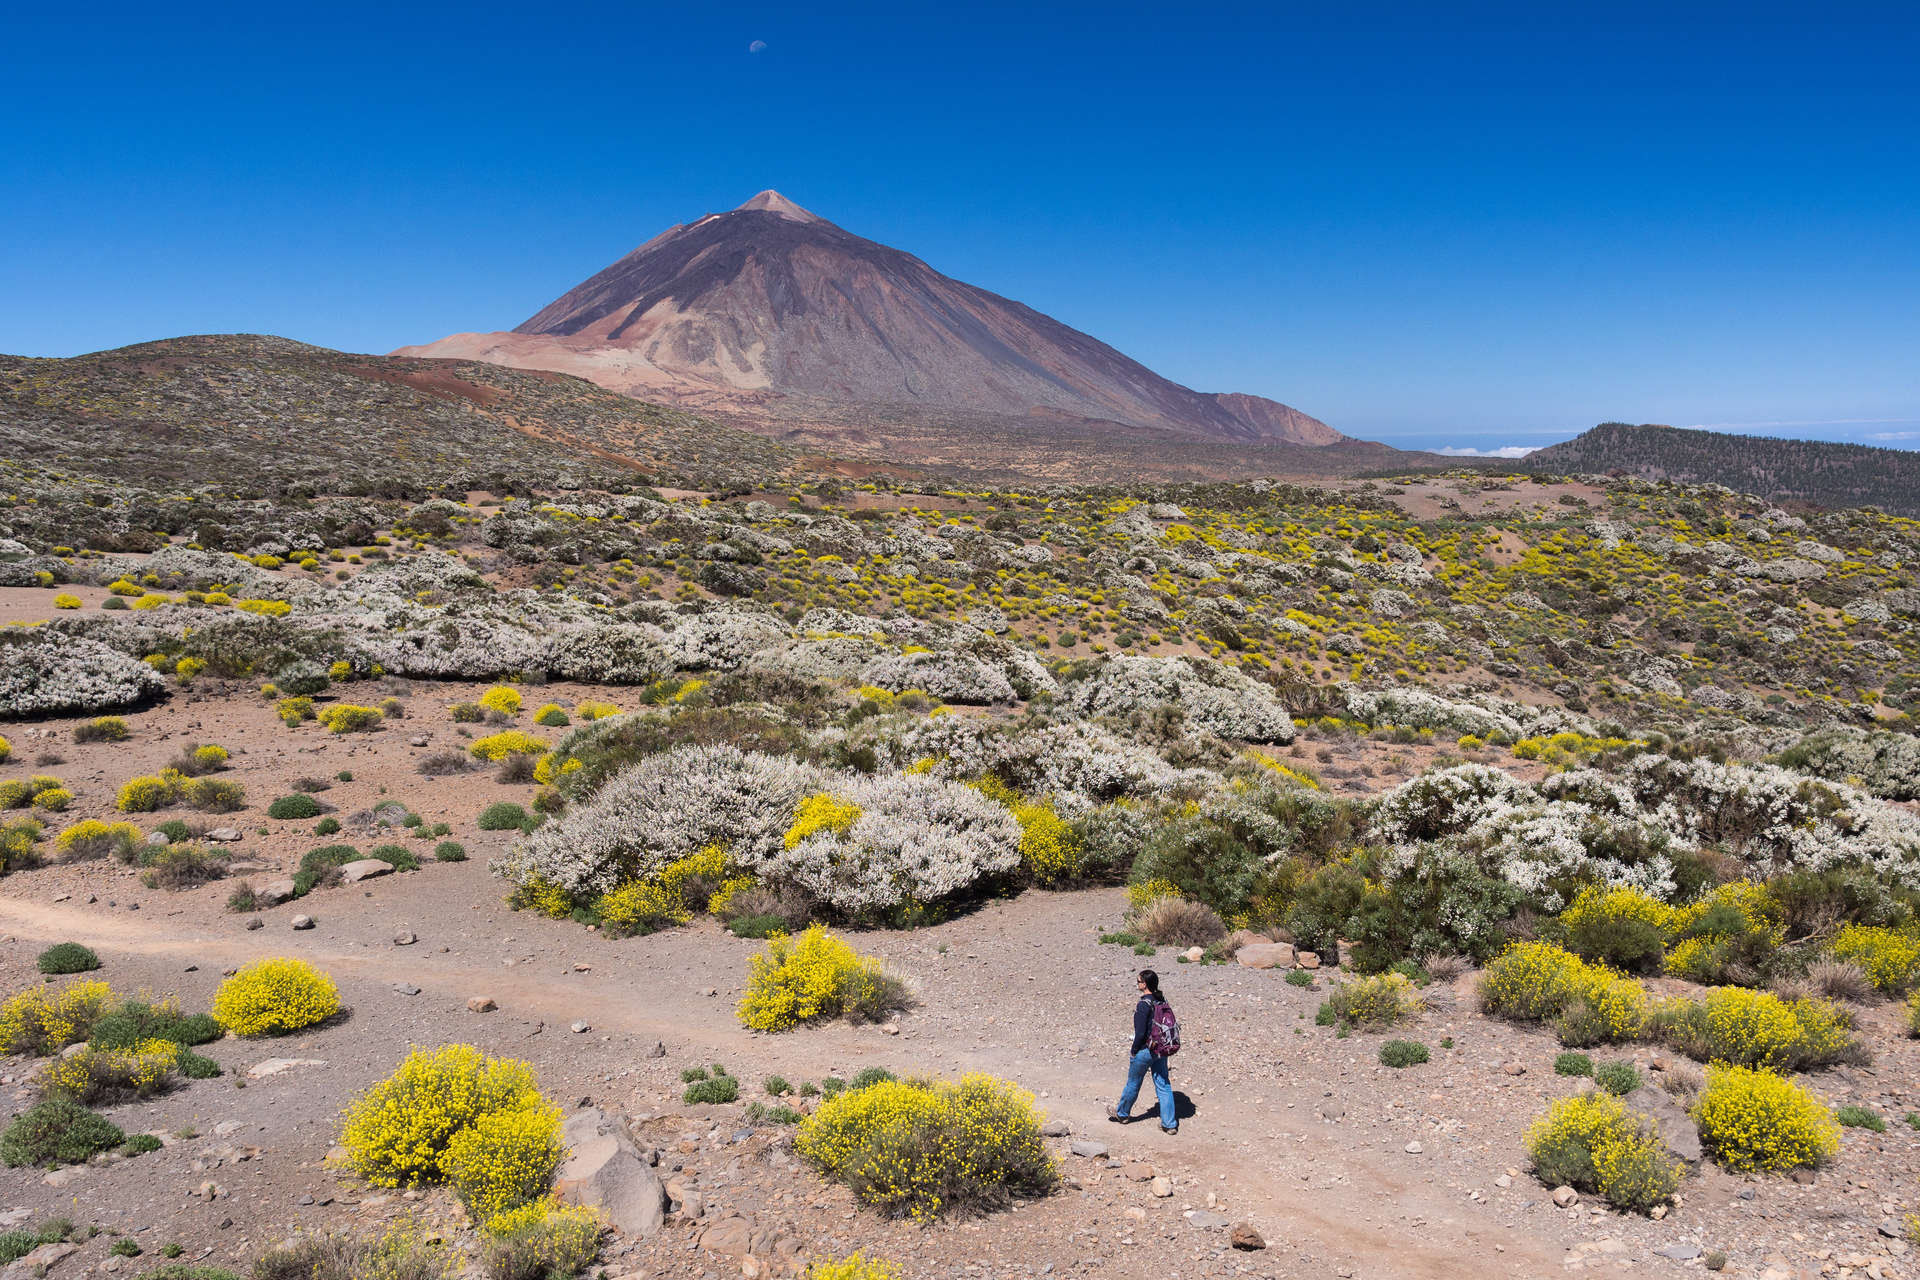 Female hiker walking in desert-like landscape on mountain volcano, Teide national park, volcano, Tenerife